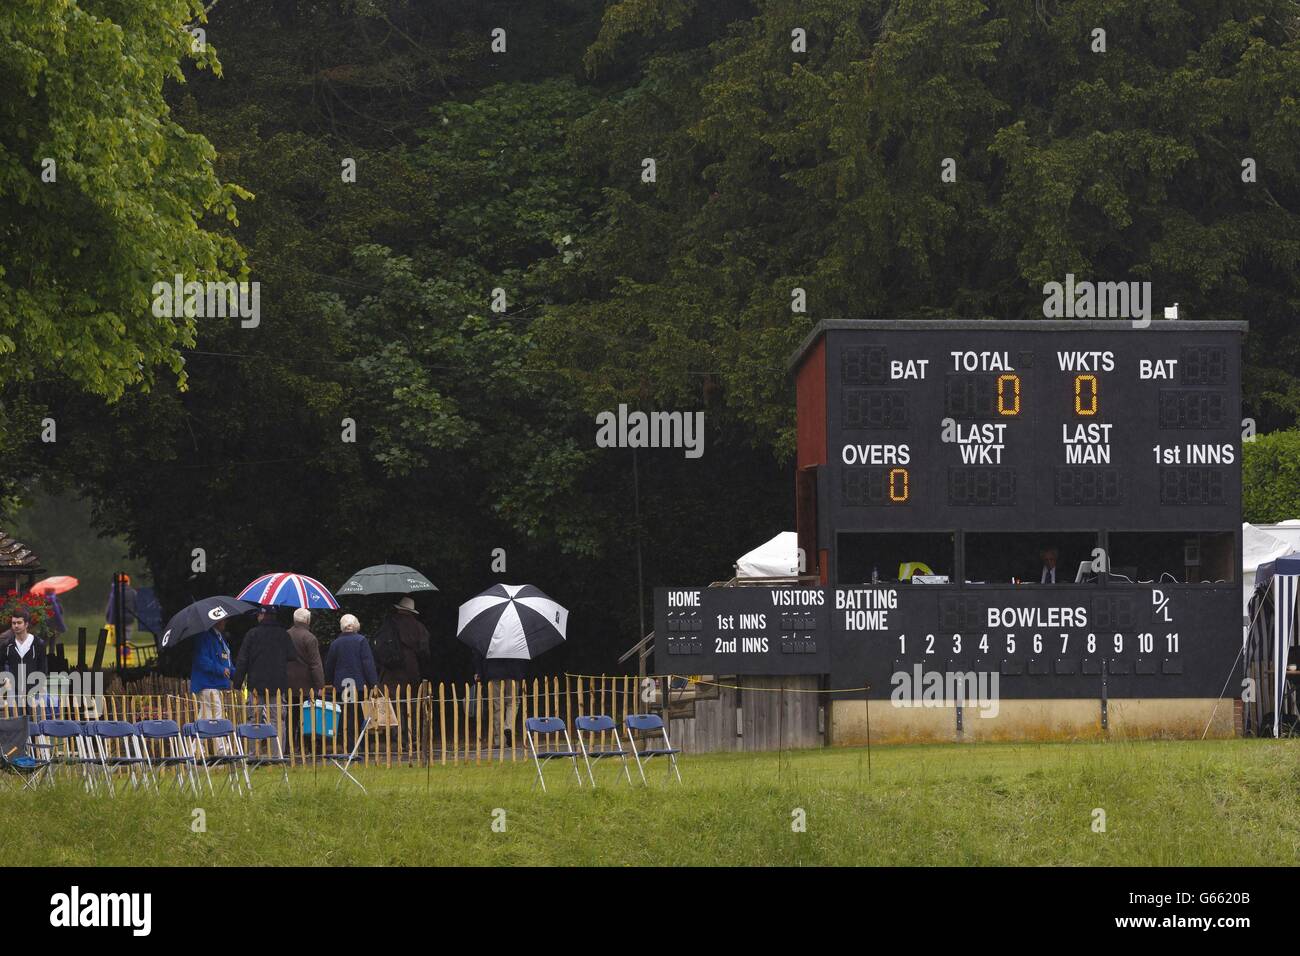 Les fans de cricket sous parasols passent le tableau blanc du Arundel Cricket Club, West Sussex où la pluie a retardé le début du LV= County Championship Division One match entre Sussex et Surrey. Banque D'Images